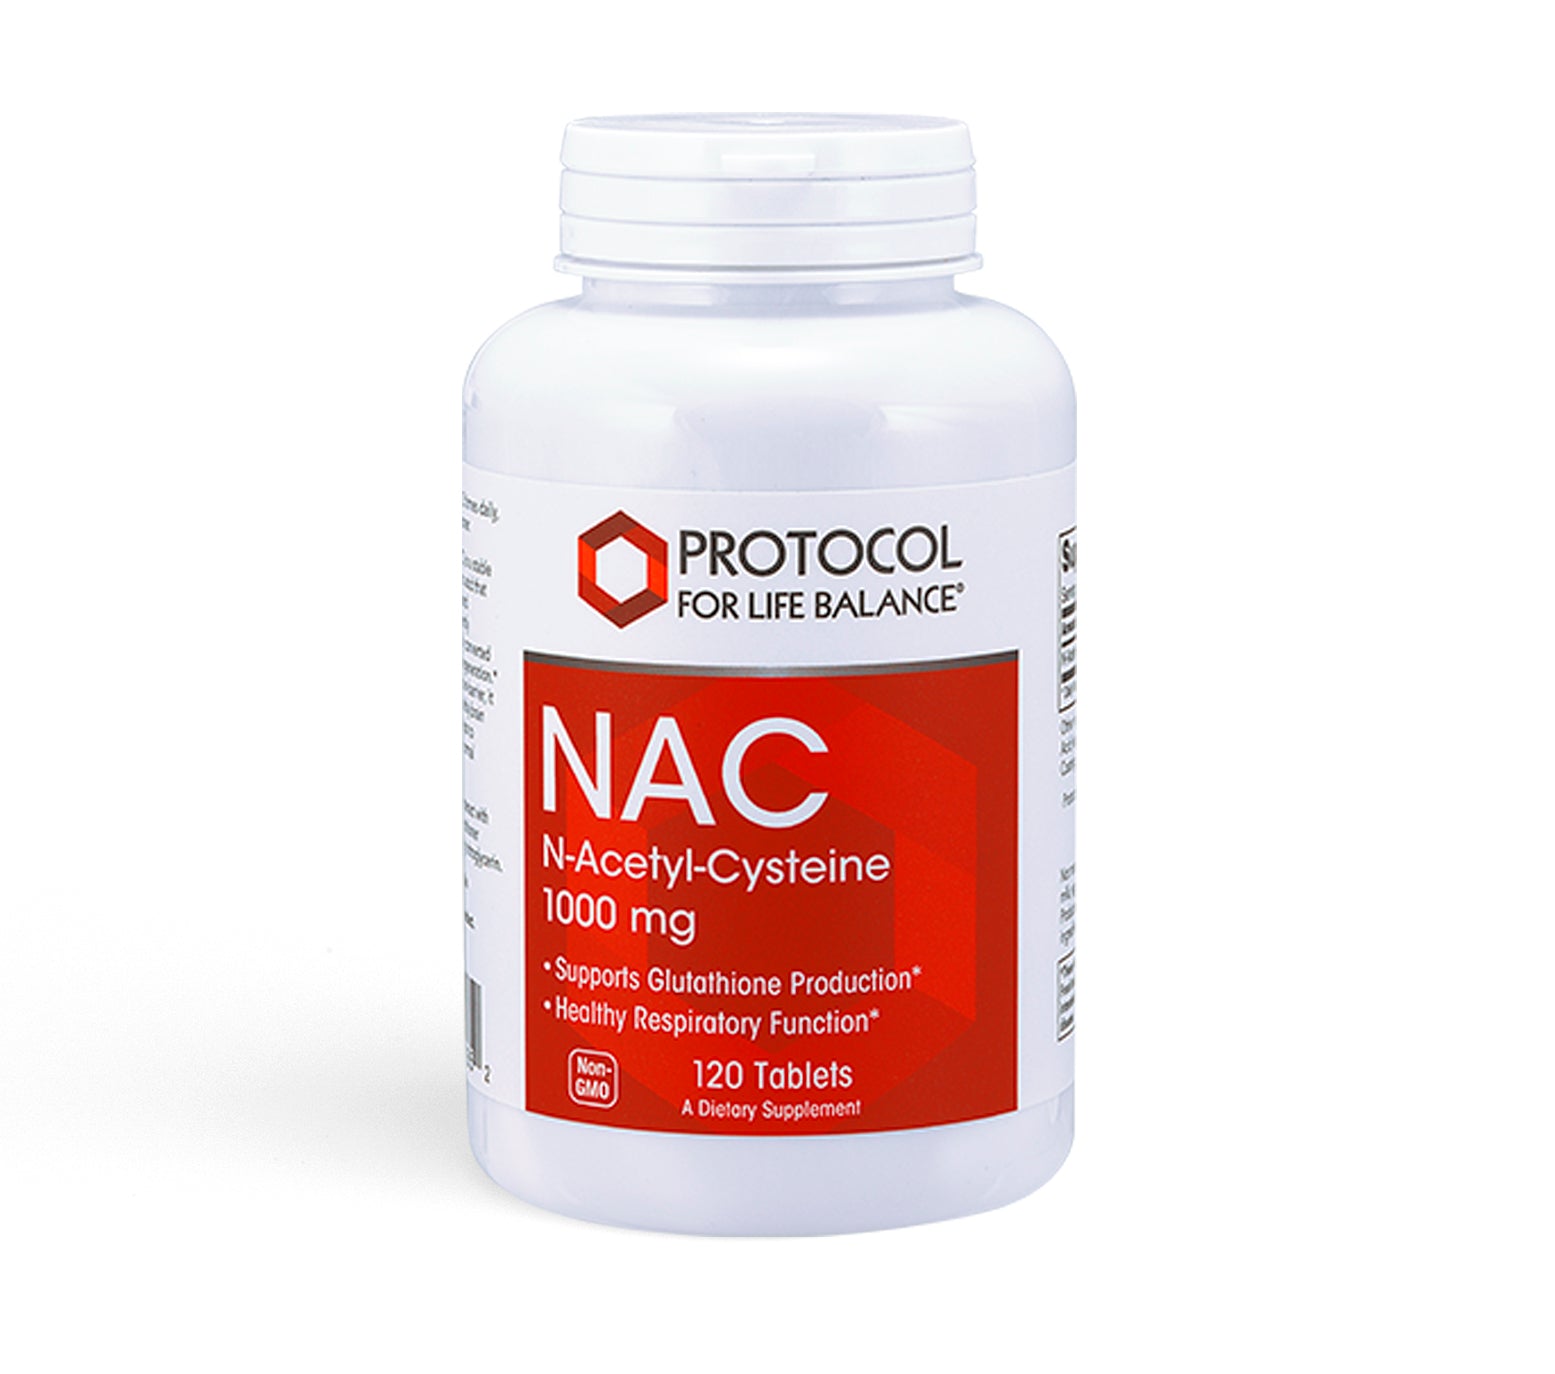 NAC (N-Acetyl-Cysteine)